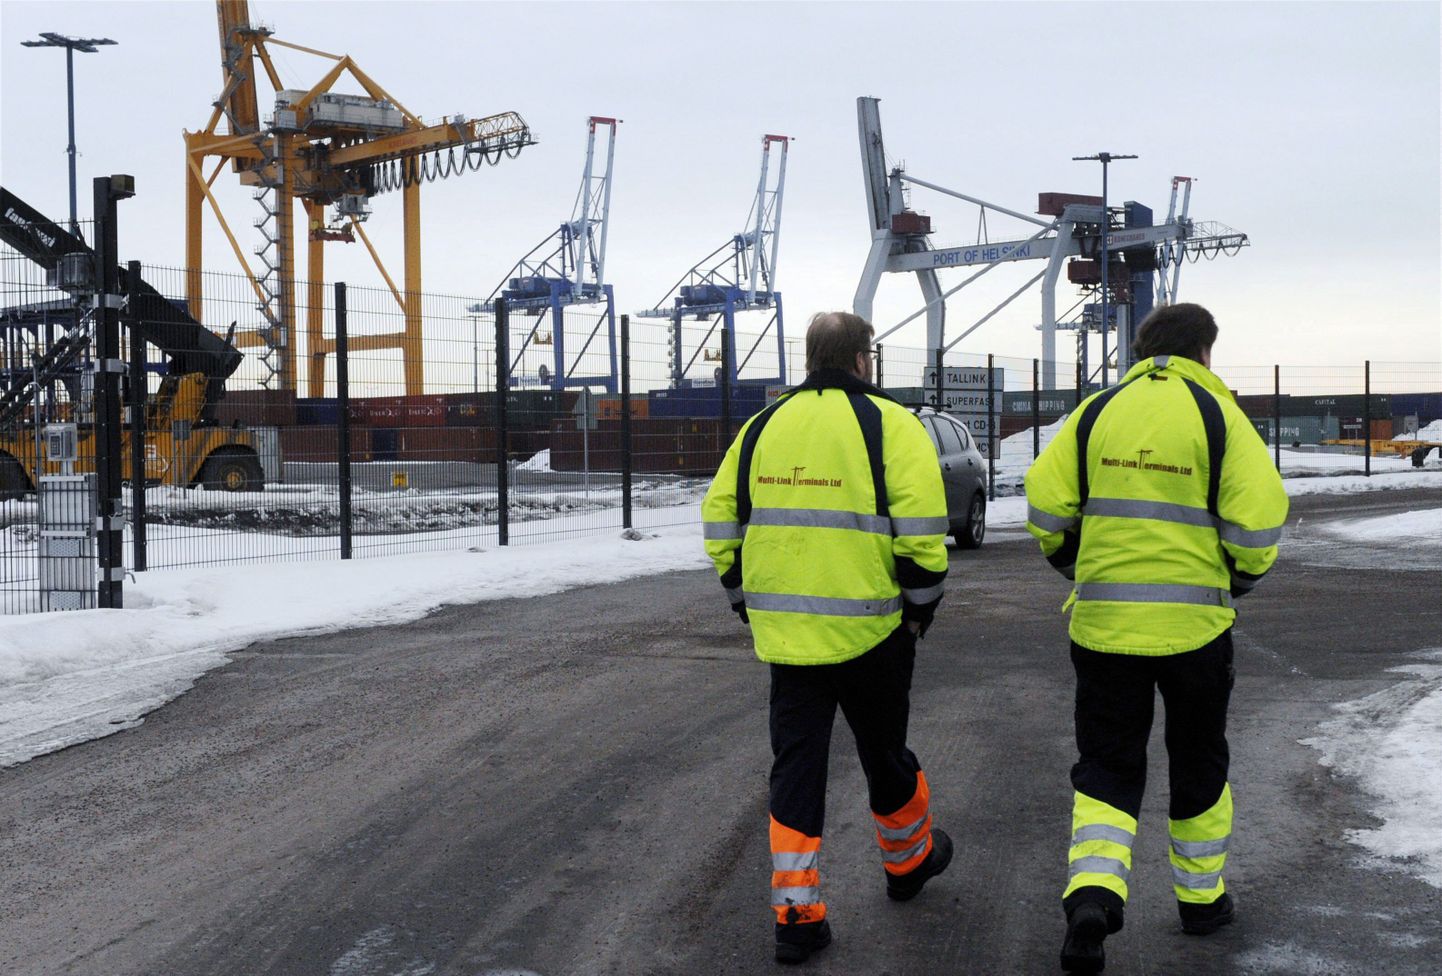 Soome majanduskasv oli esimeses kvartalis euroala madalaim. Pildil stividorid Helsingi Vuosaari sadamas.